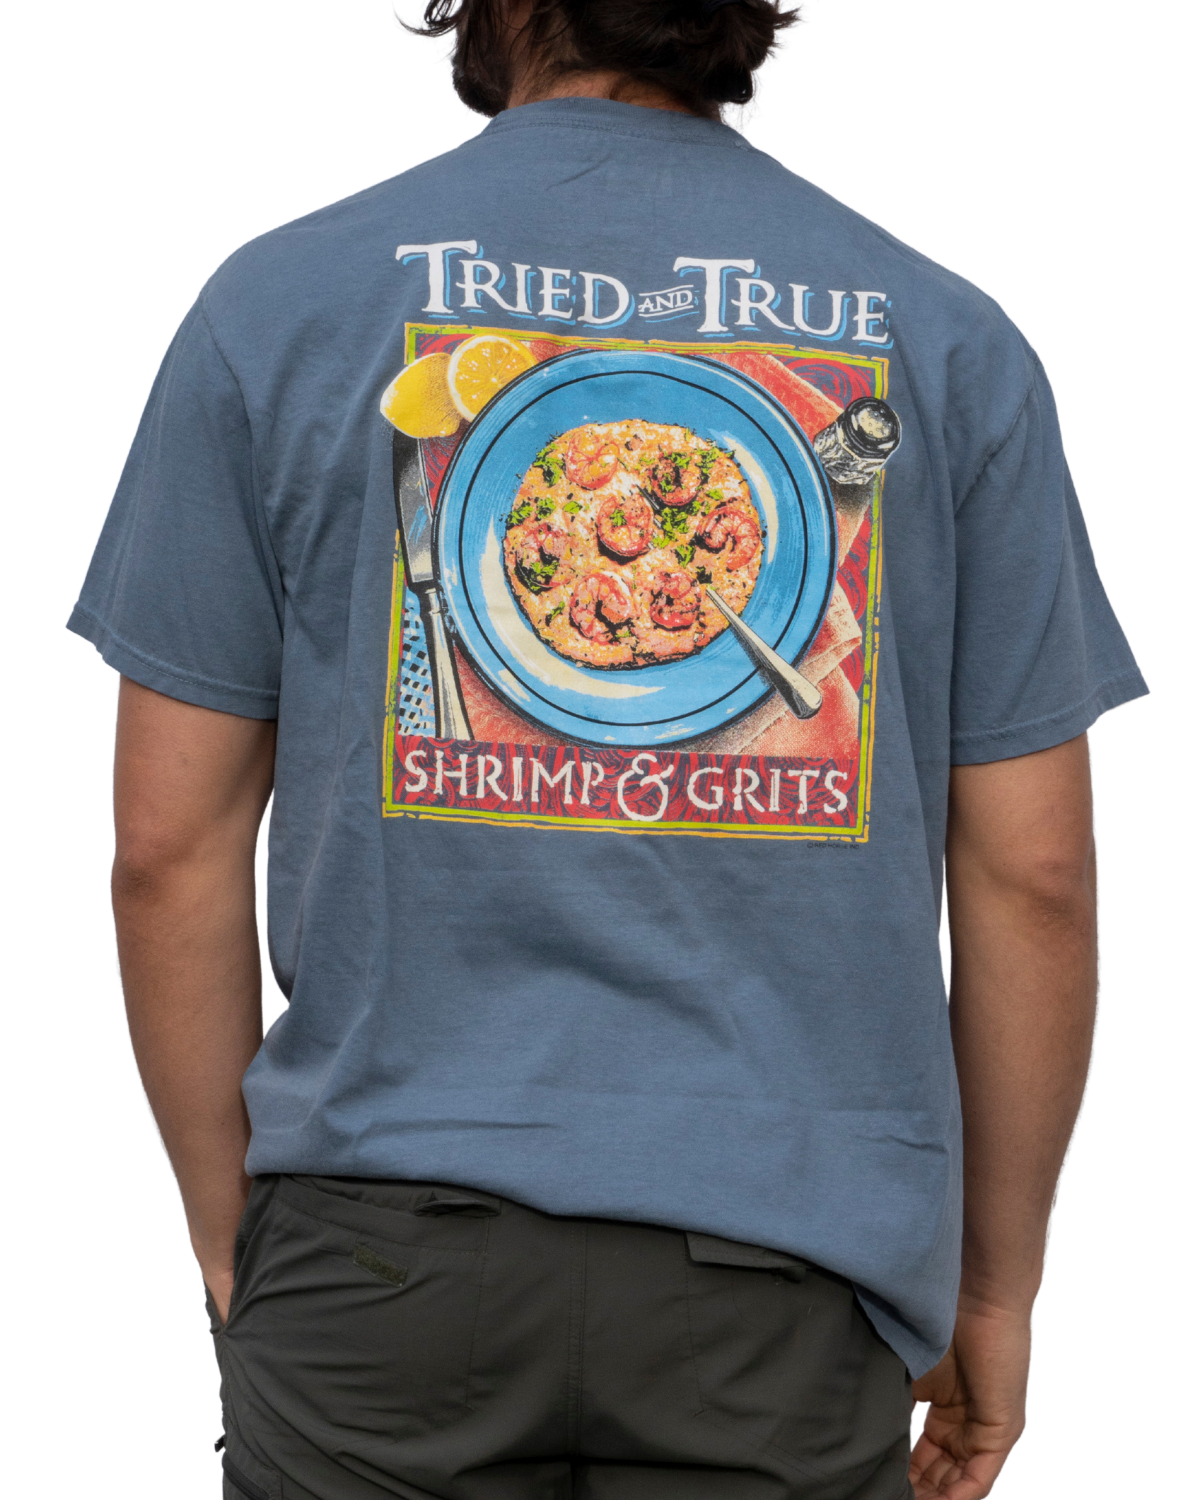 Shrimp & Grits